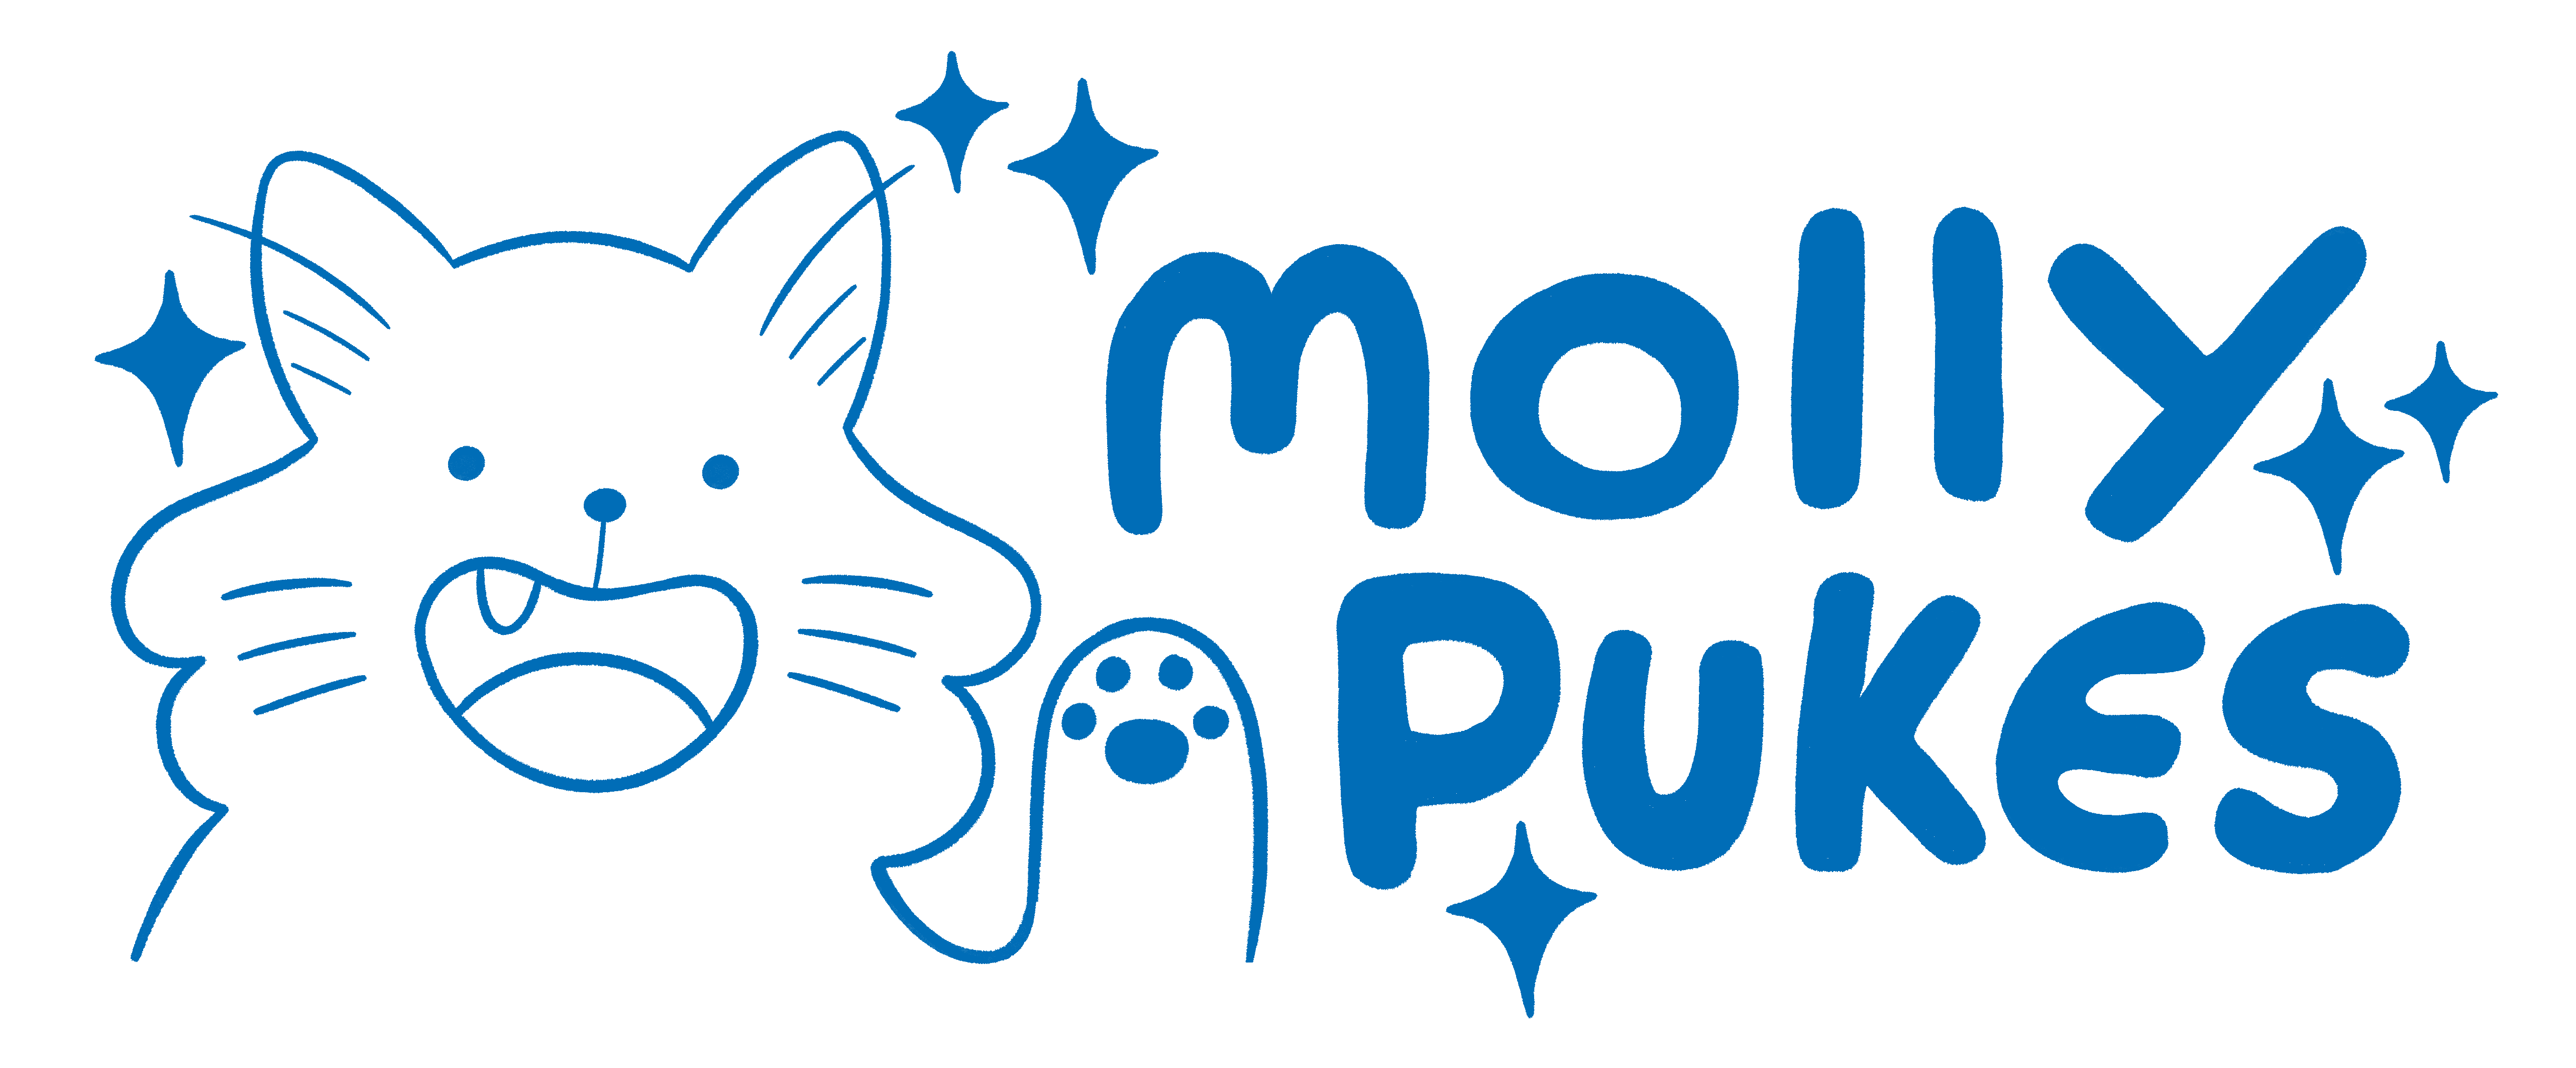 Mollypukes